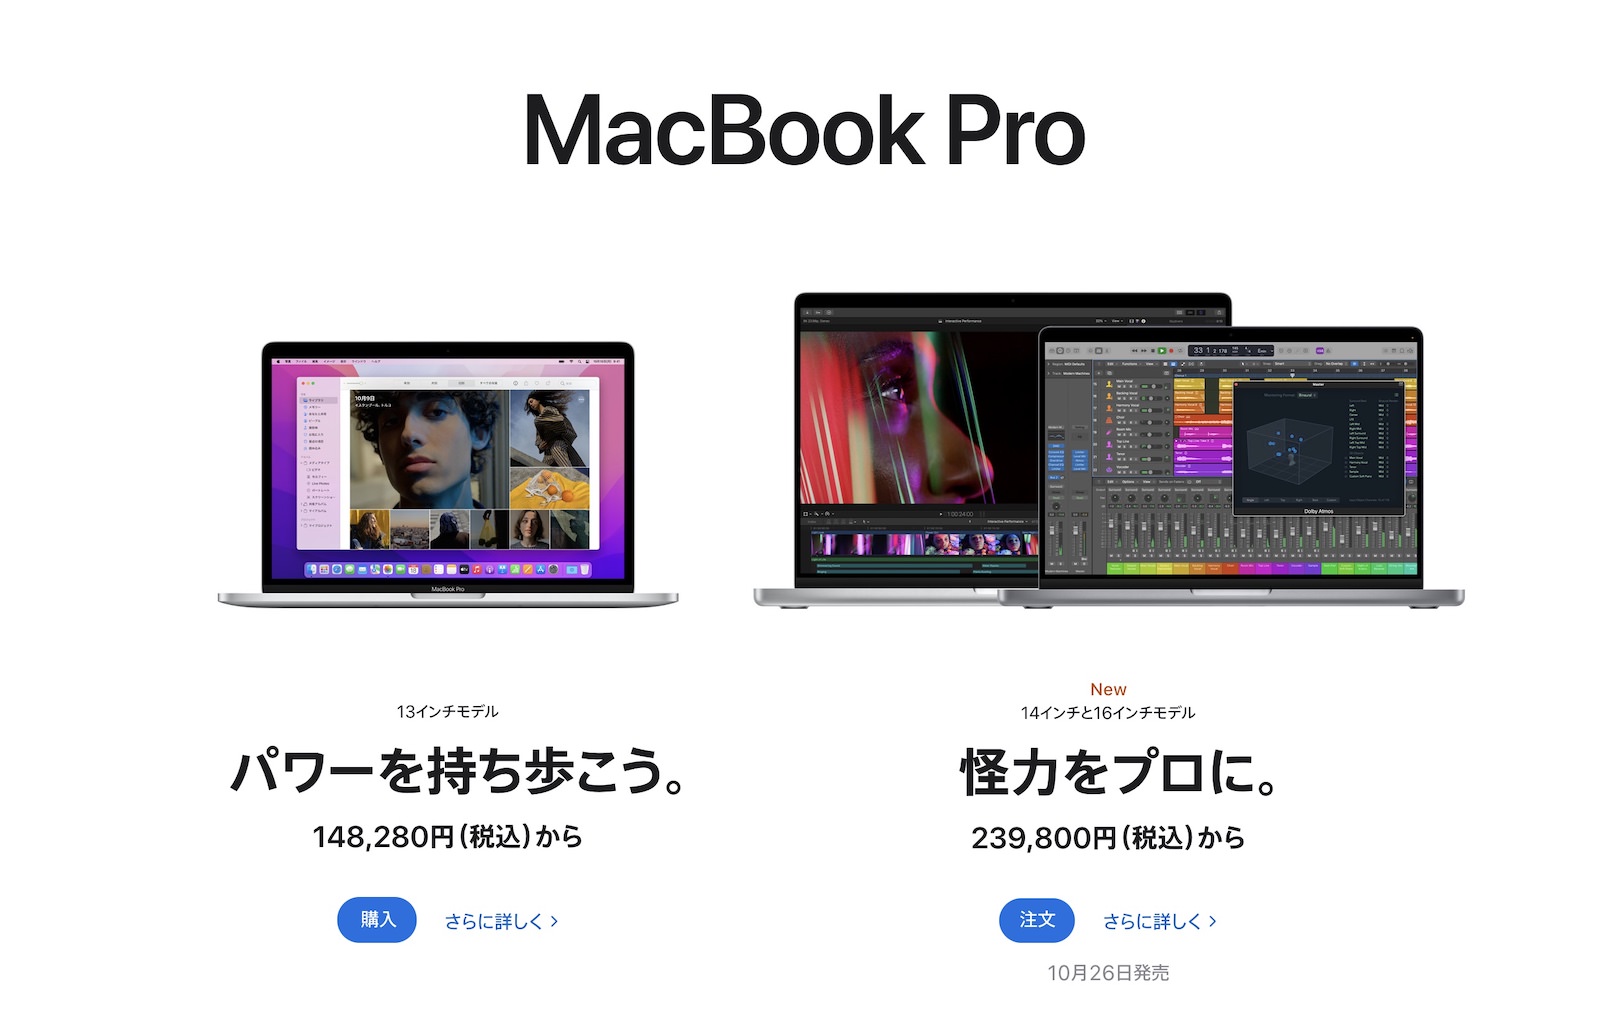 macbook-pro-lineup.jpg